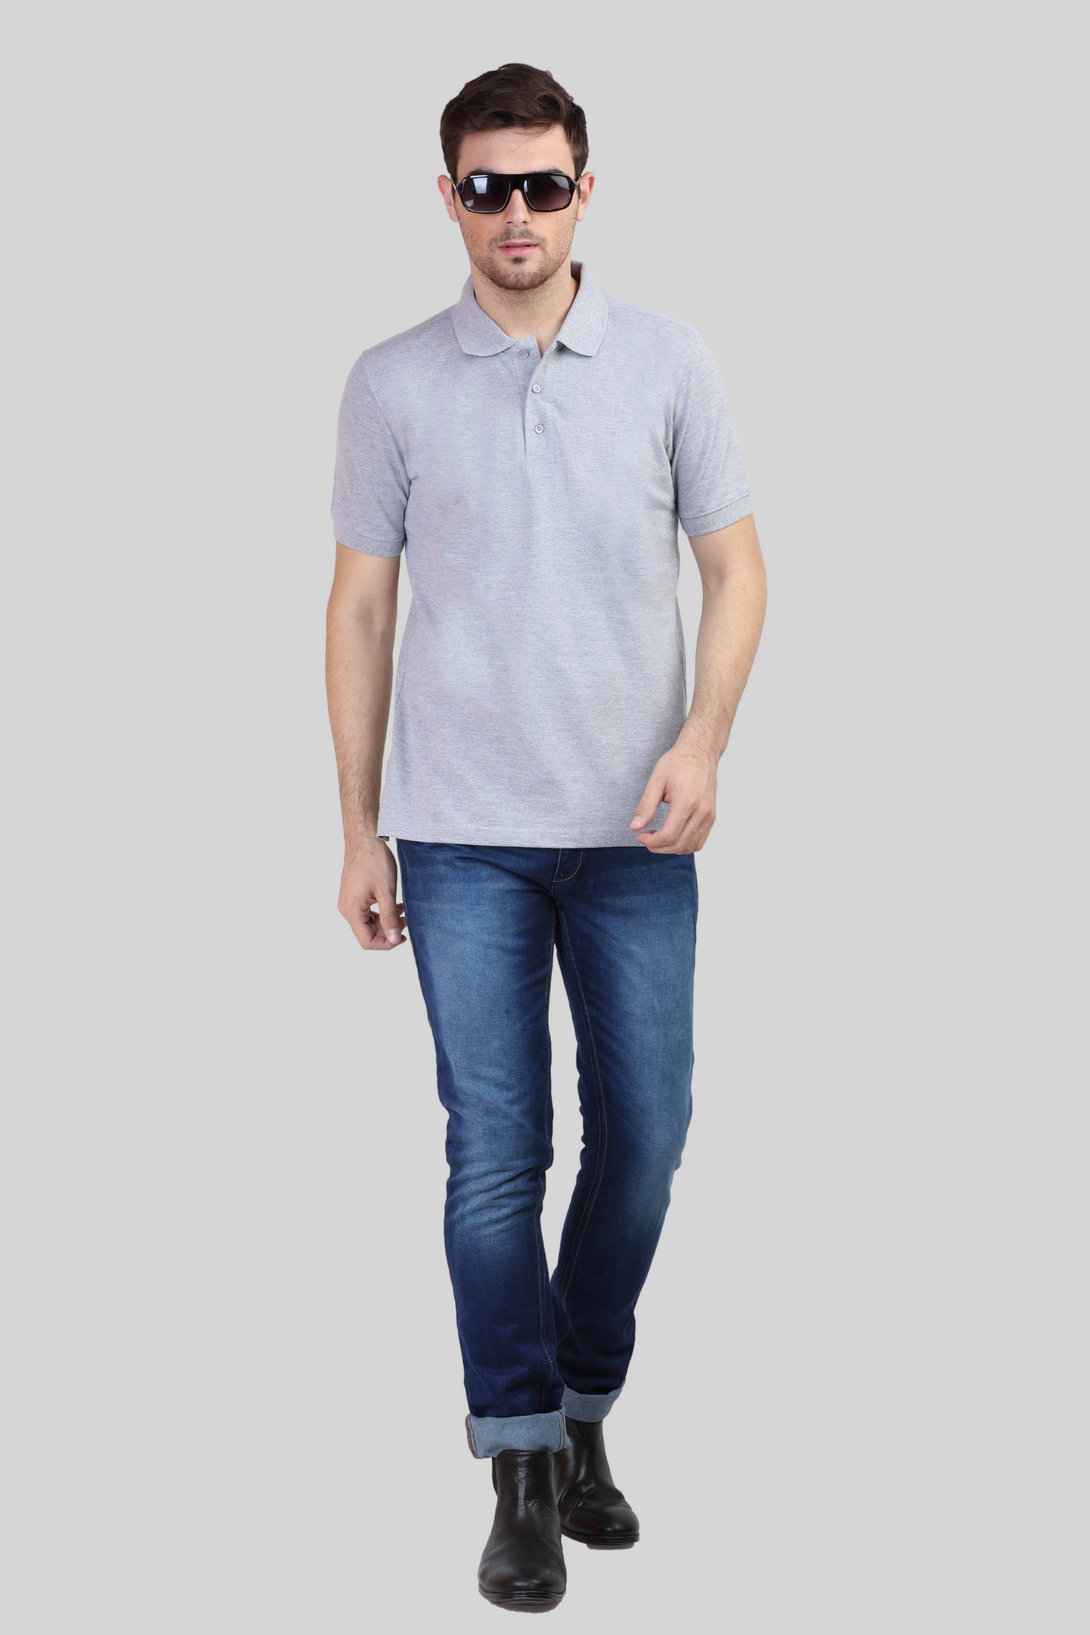 Grey Melange Polo T-Shirt For Men - WowWaves - 2